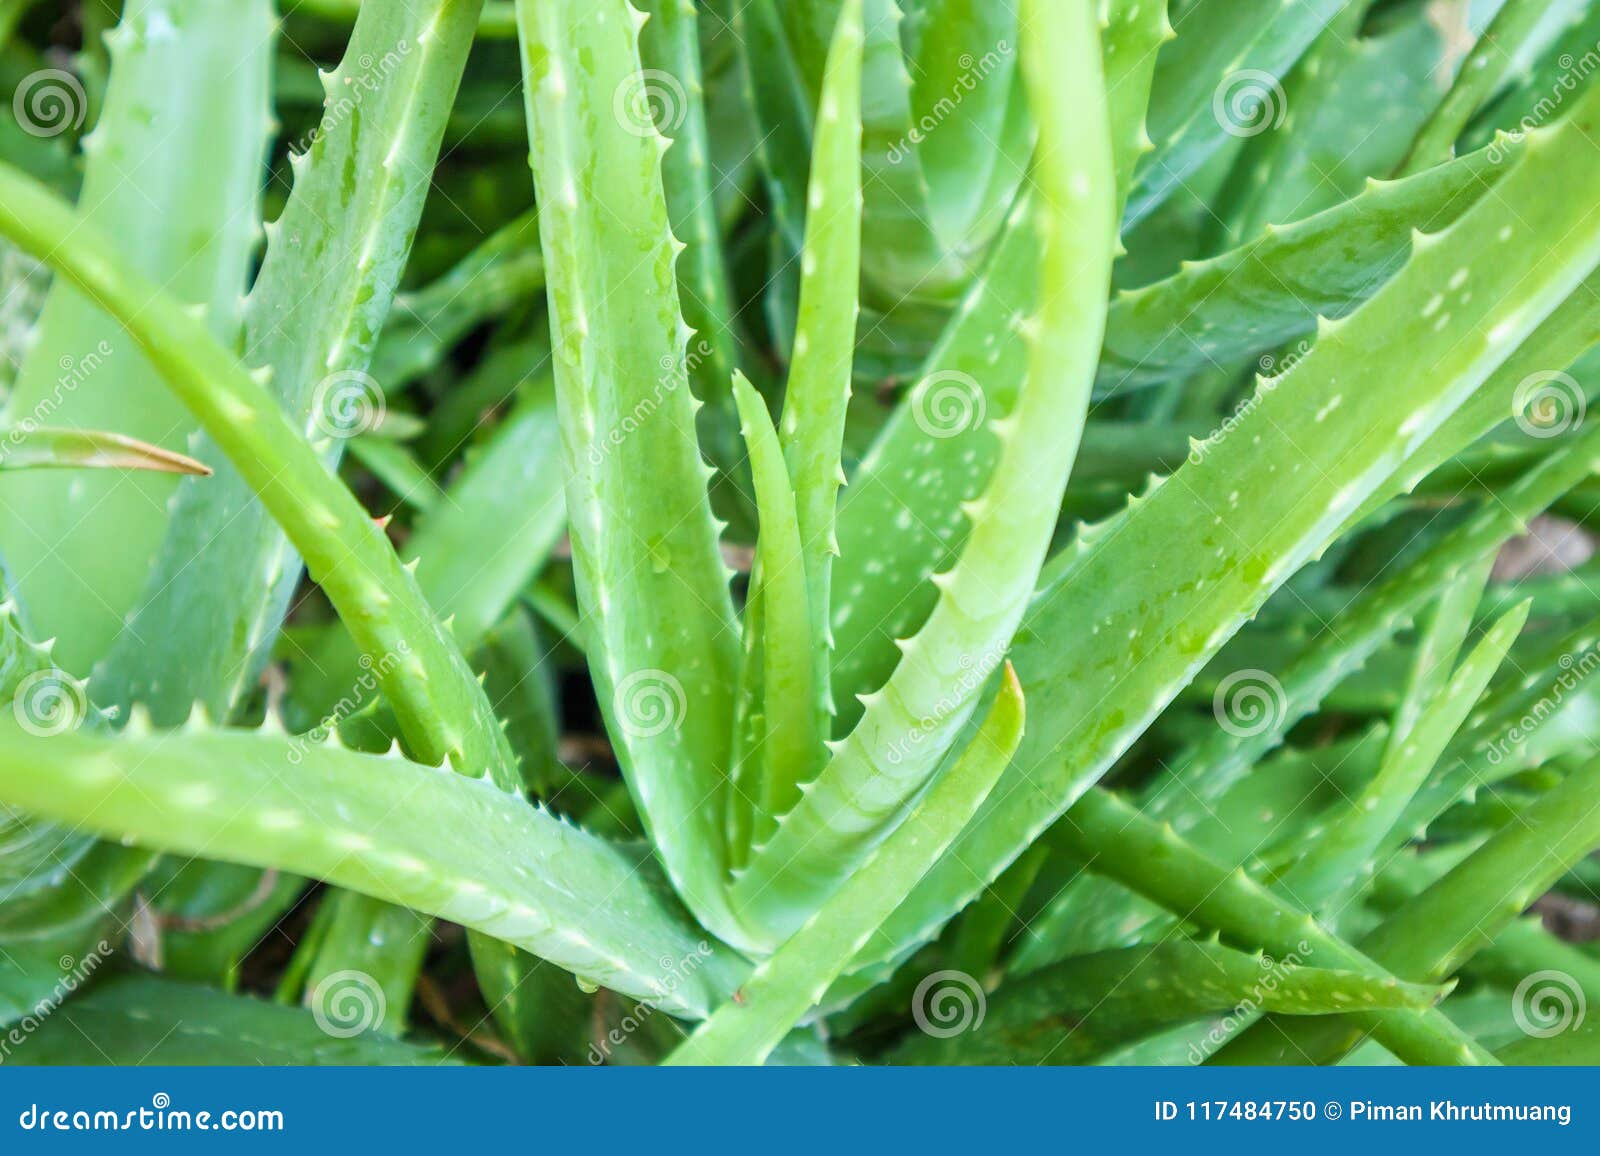 Aloe Vera Plant Herbal Medicine For Skin Care Stock Photo Image